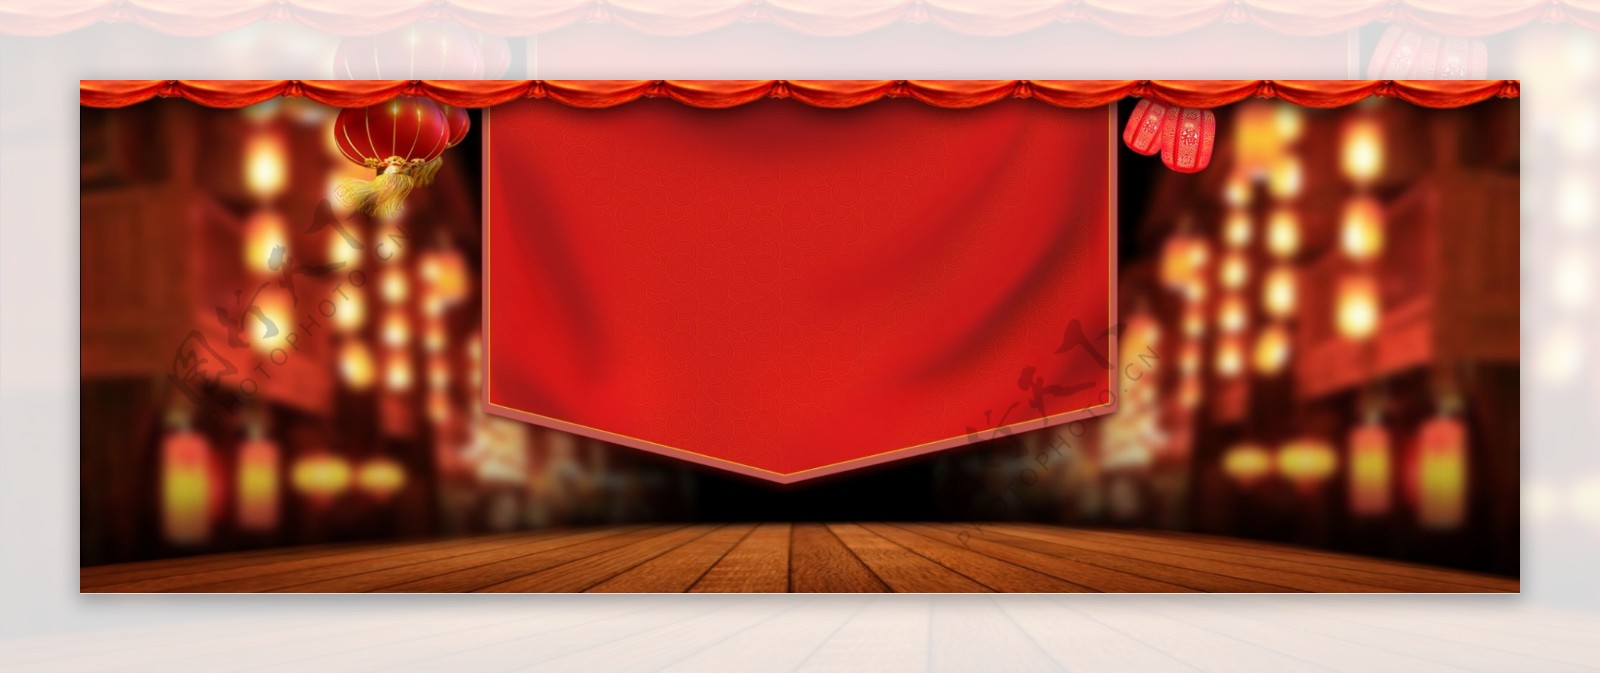 红色主题舞台背景